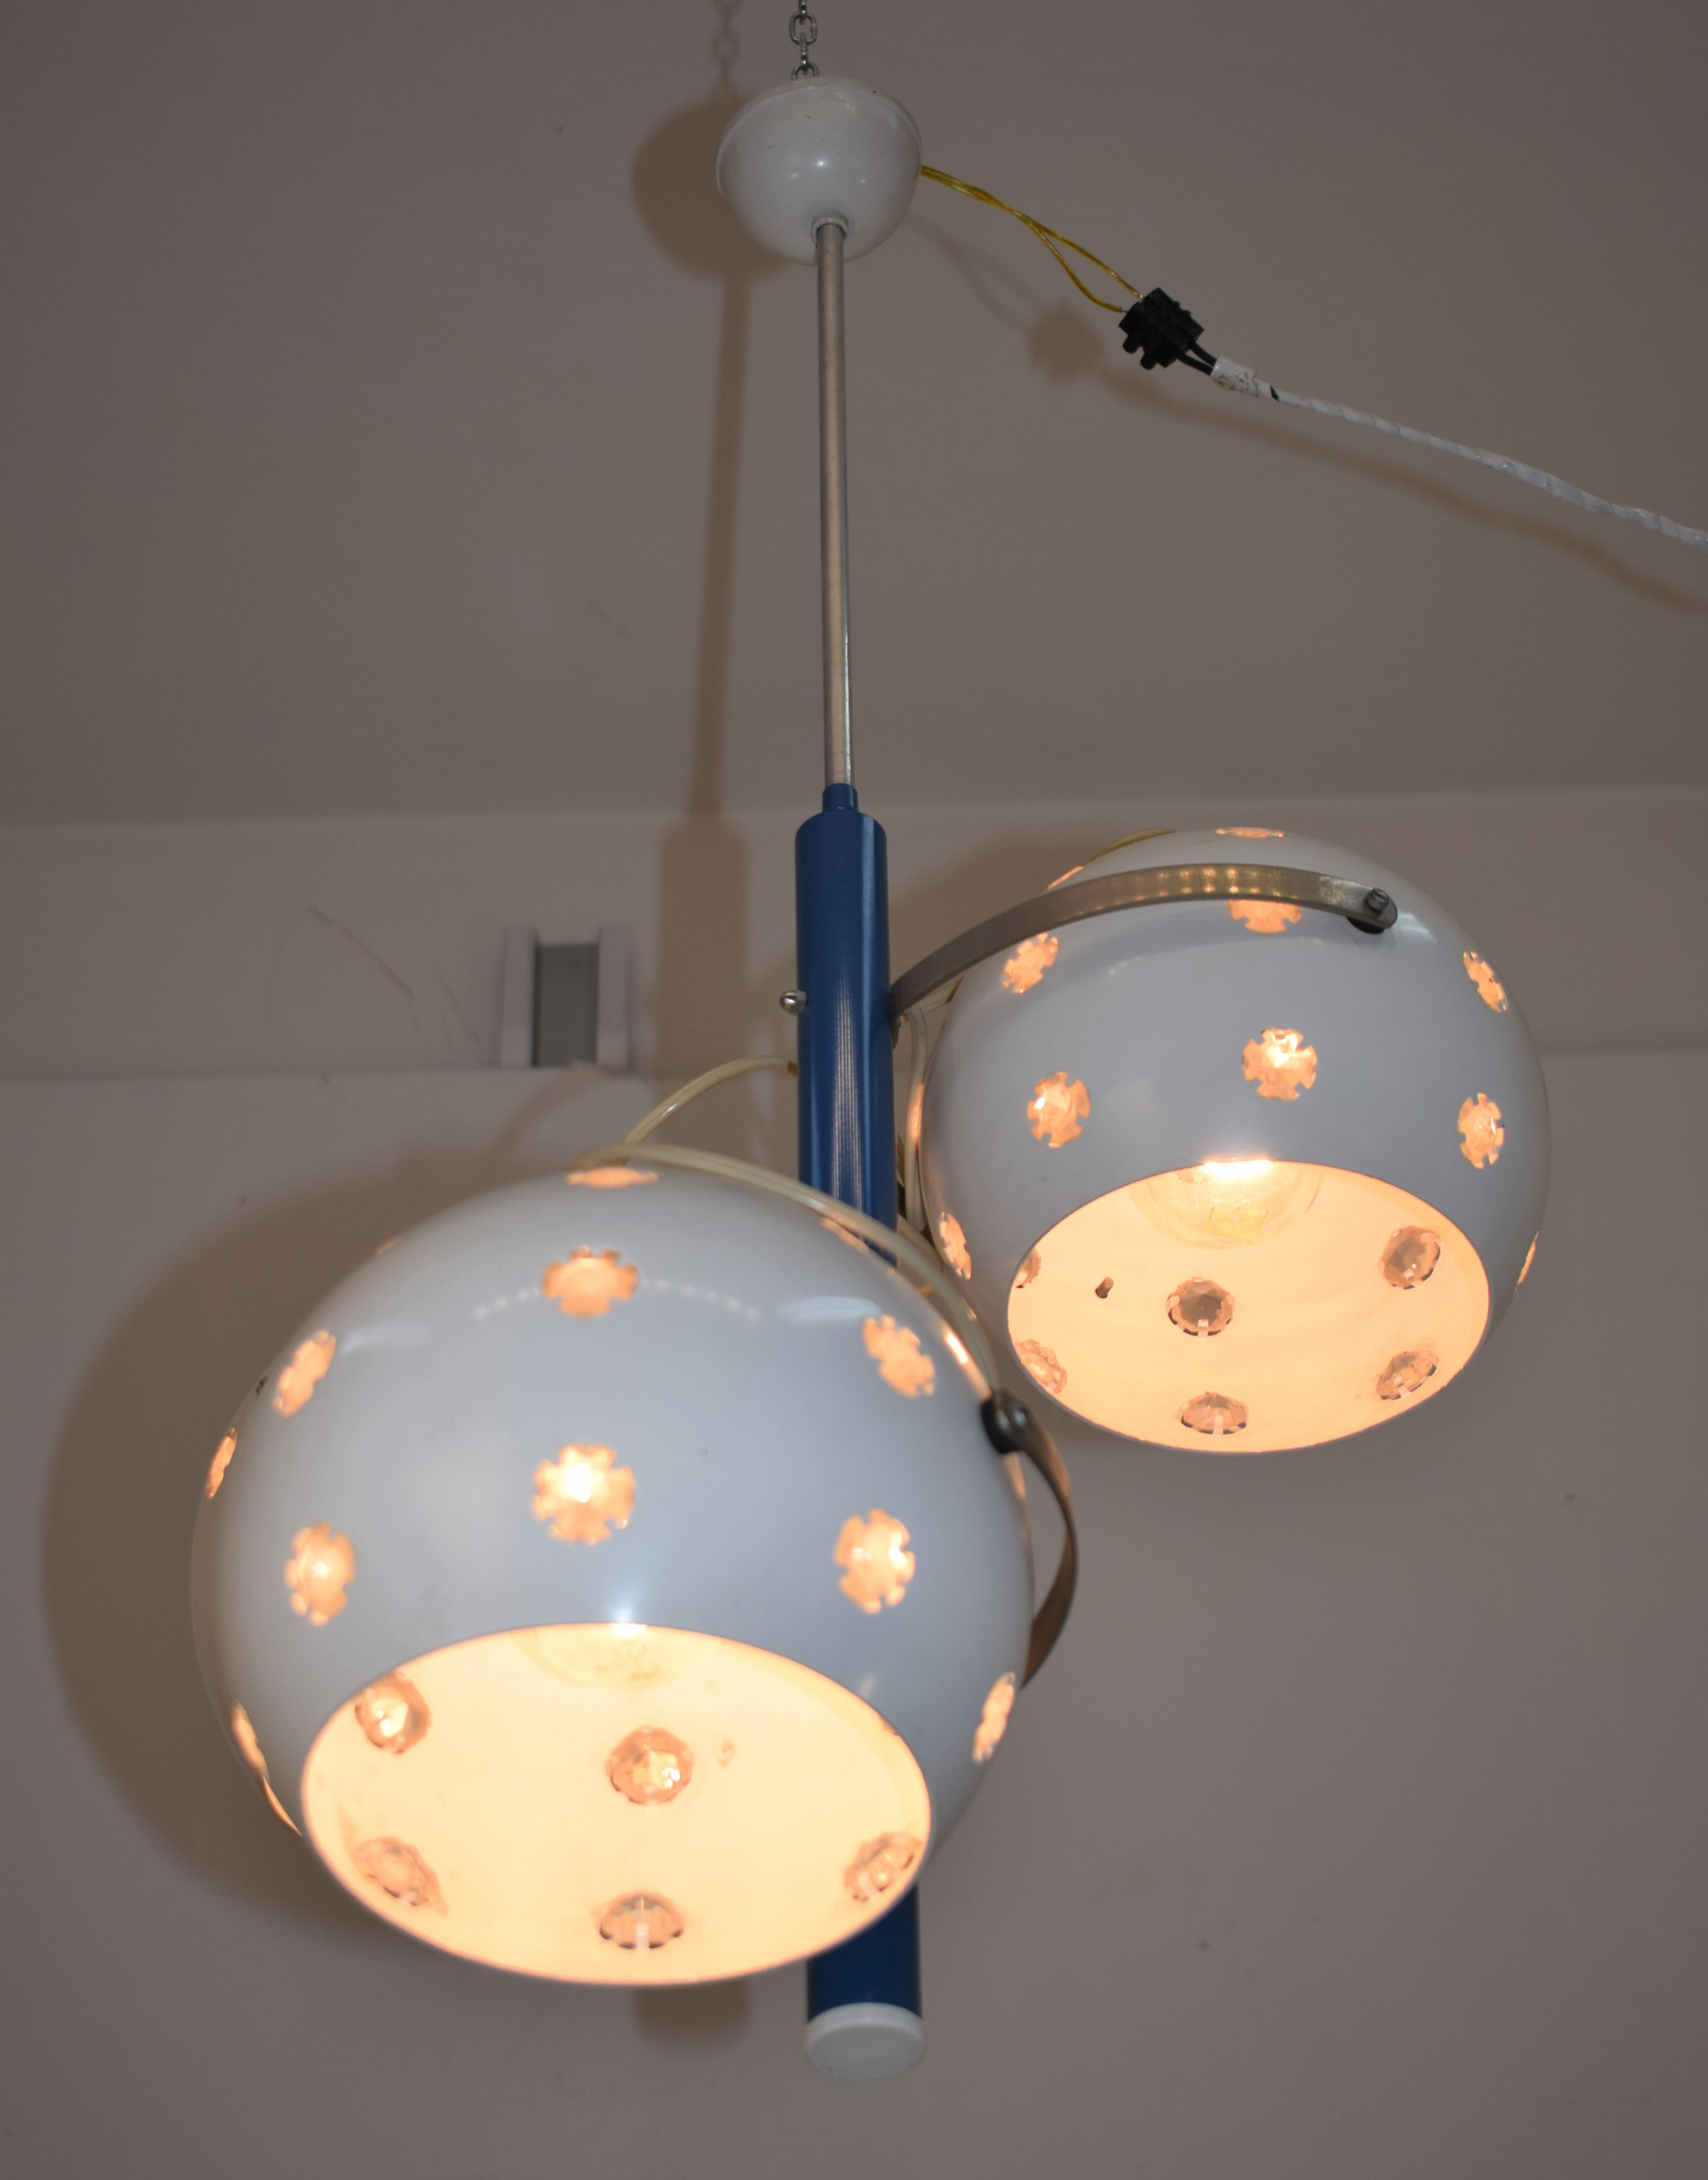 Italian chandeliers, 1960s.
Dimensions: H=80 cm; W=45 cm; D=35 cm.